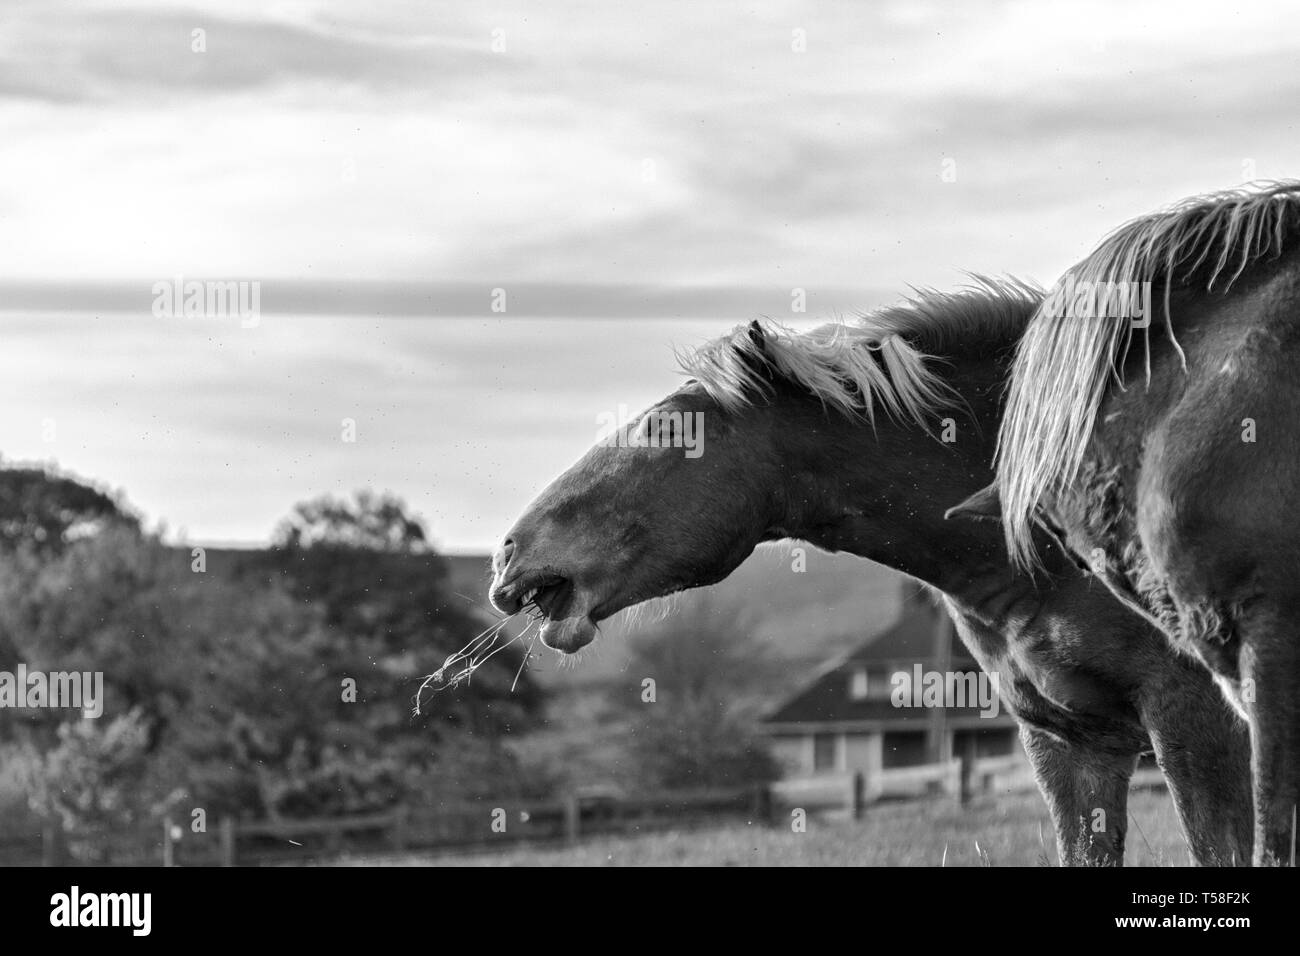 Un cheval de trait belge (Equus ferus caballus) mange de l'herbe, apparemment à l'aise. Banque D'Images